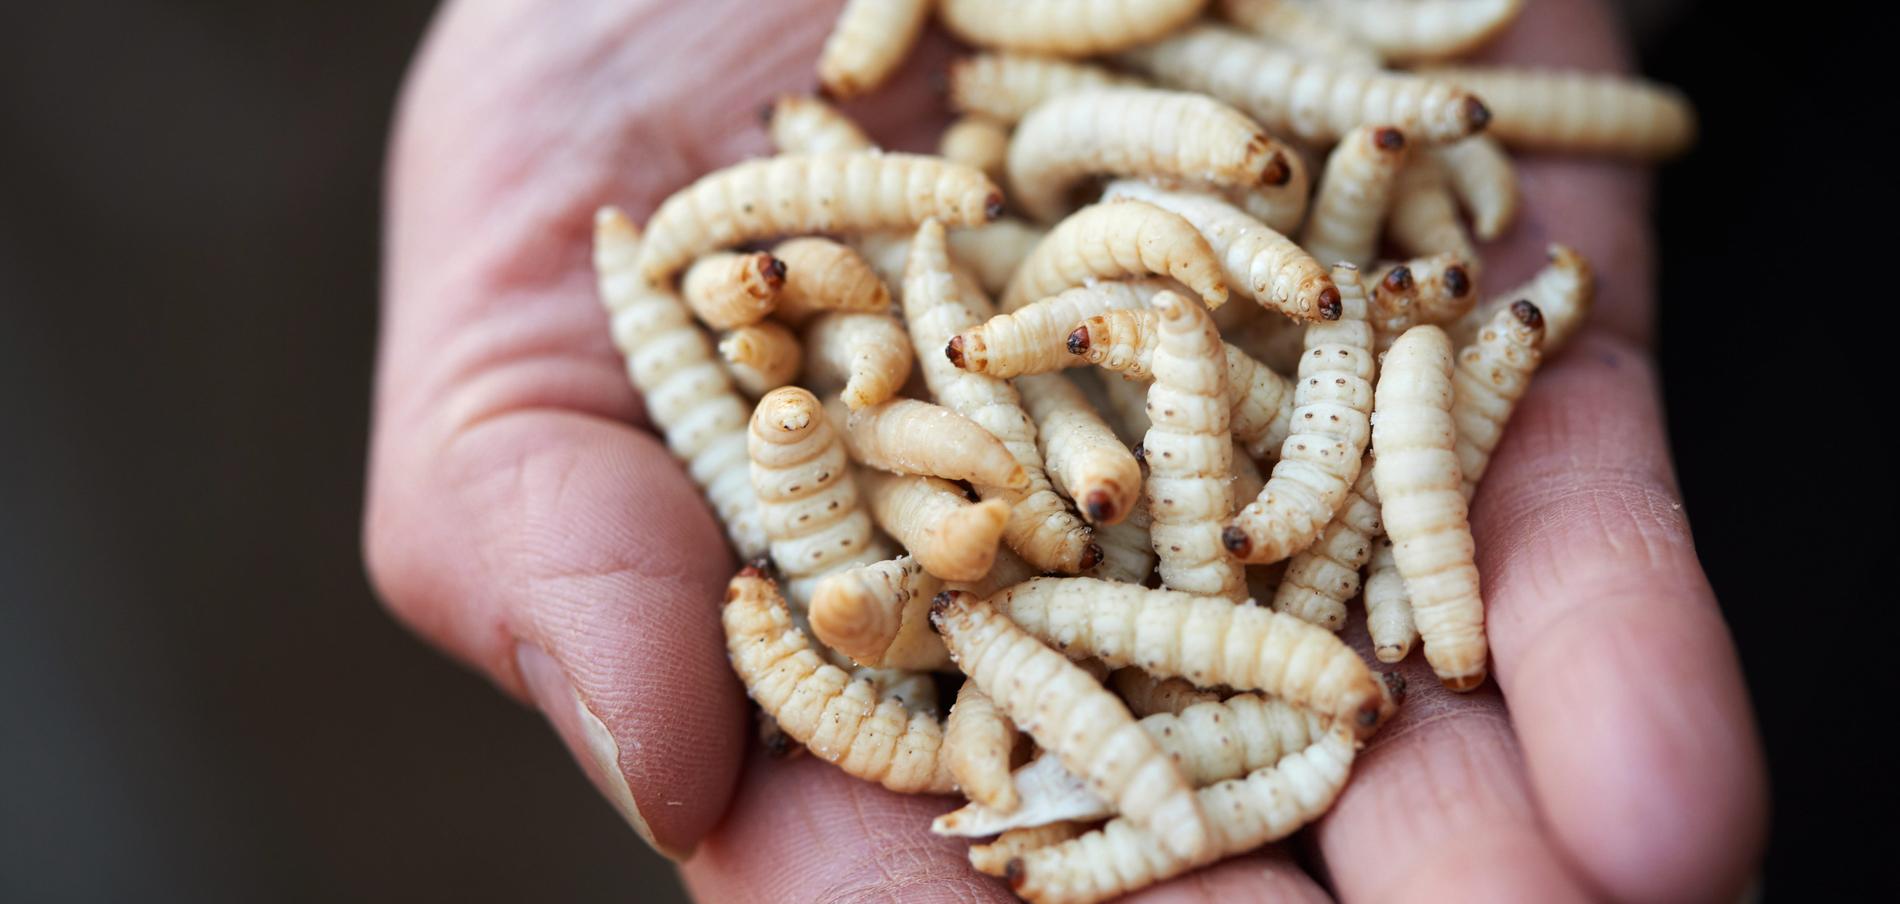 Lite smågodis? Redan nästa år kan insekter bli lagligt som ingrediens både på restauranger och i livsmedelsbutiker. Idag är det förbjudet att sälja insekter som mat för människor. 